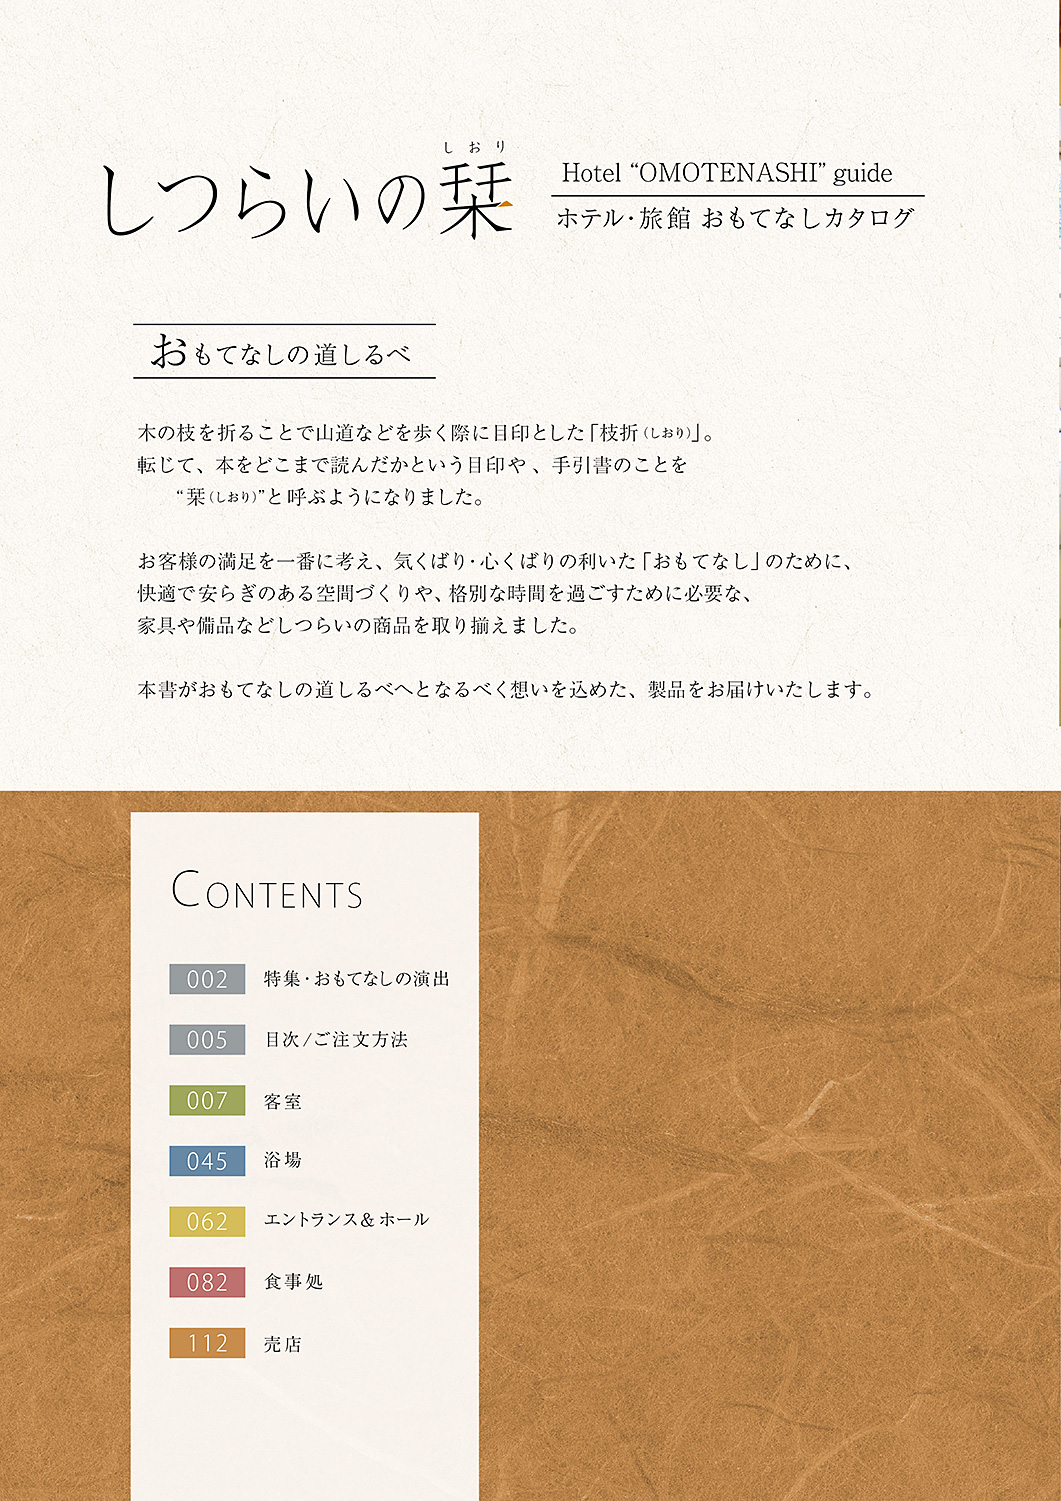 しつらいの栞 vol.3 ホテル・旅館 おもてなしカタログ Hotel "OMOTENASHI" guide